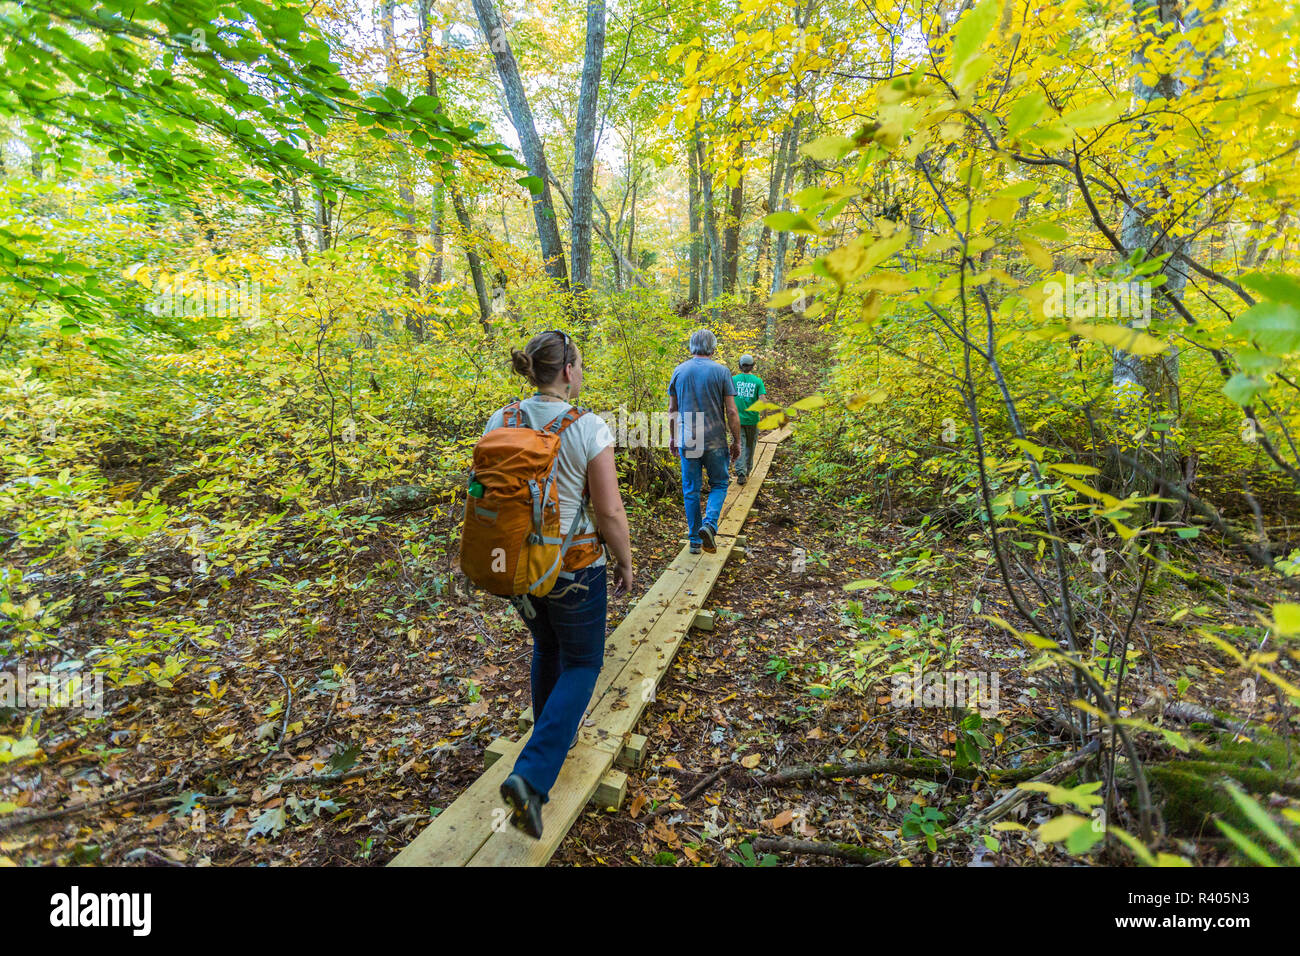 Les randonneurs sur un sentier forestier dans la région de Marshfield, Massachusetts. Hoyt-Hall préserver. (MR) Banque D'Images